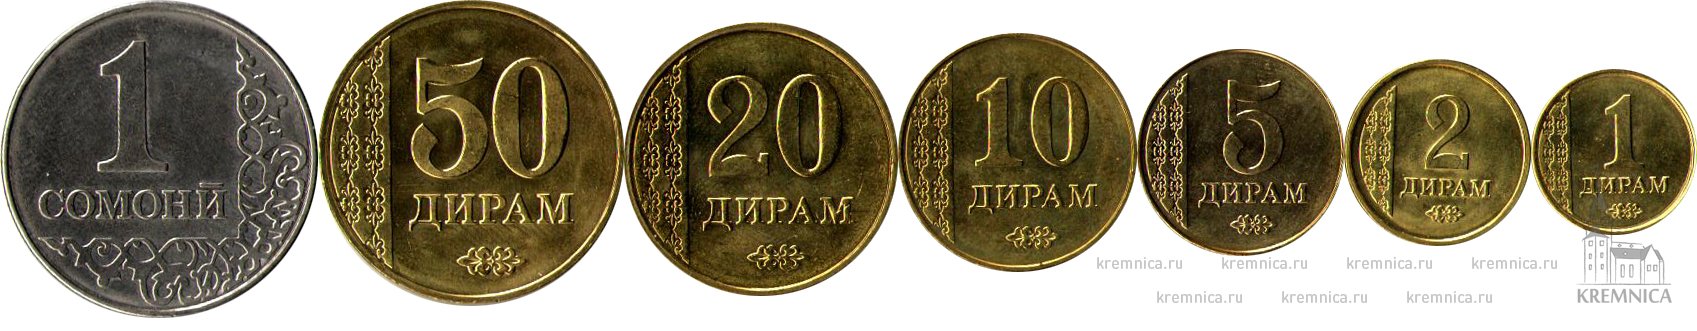 Набор из 7 монет 2011 Таджикистан купить в интернет магазине с доставкой по всей России|Характеристики, лучшая цена, подробная информация|Строгий контроль качества